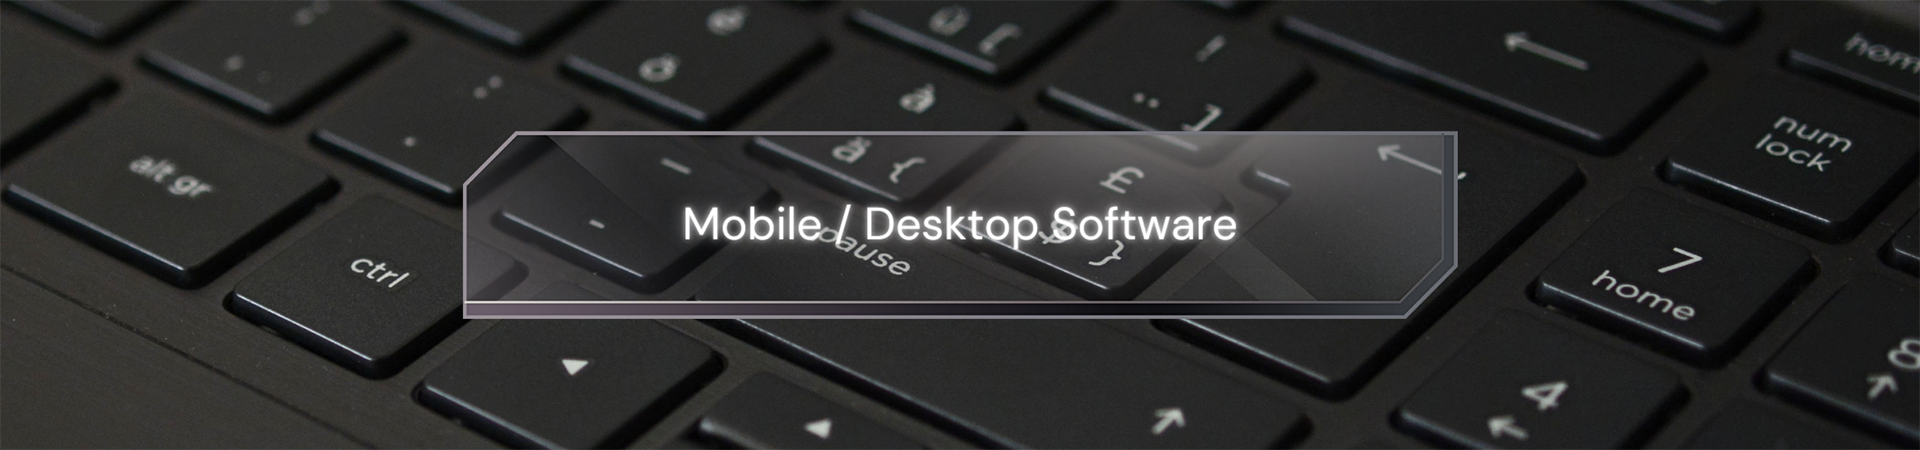 Mobile Desktop Software